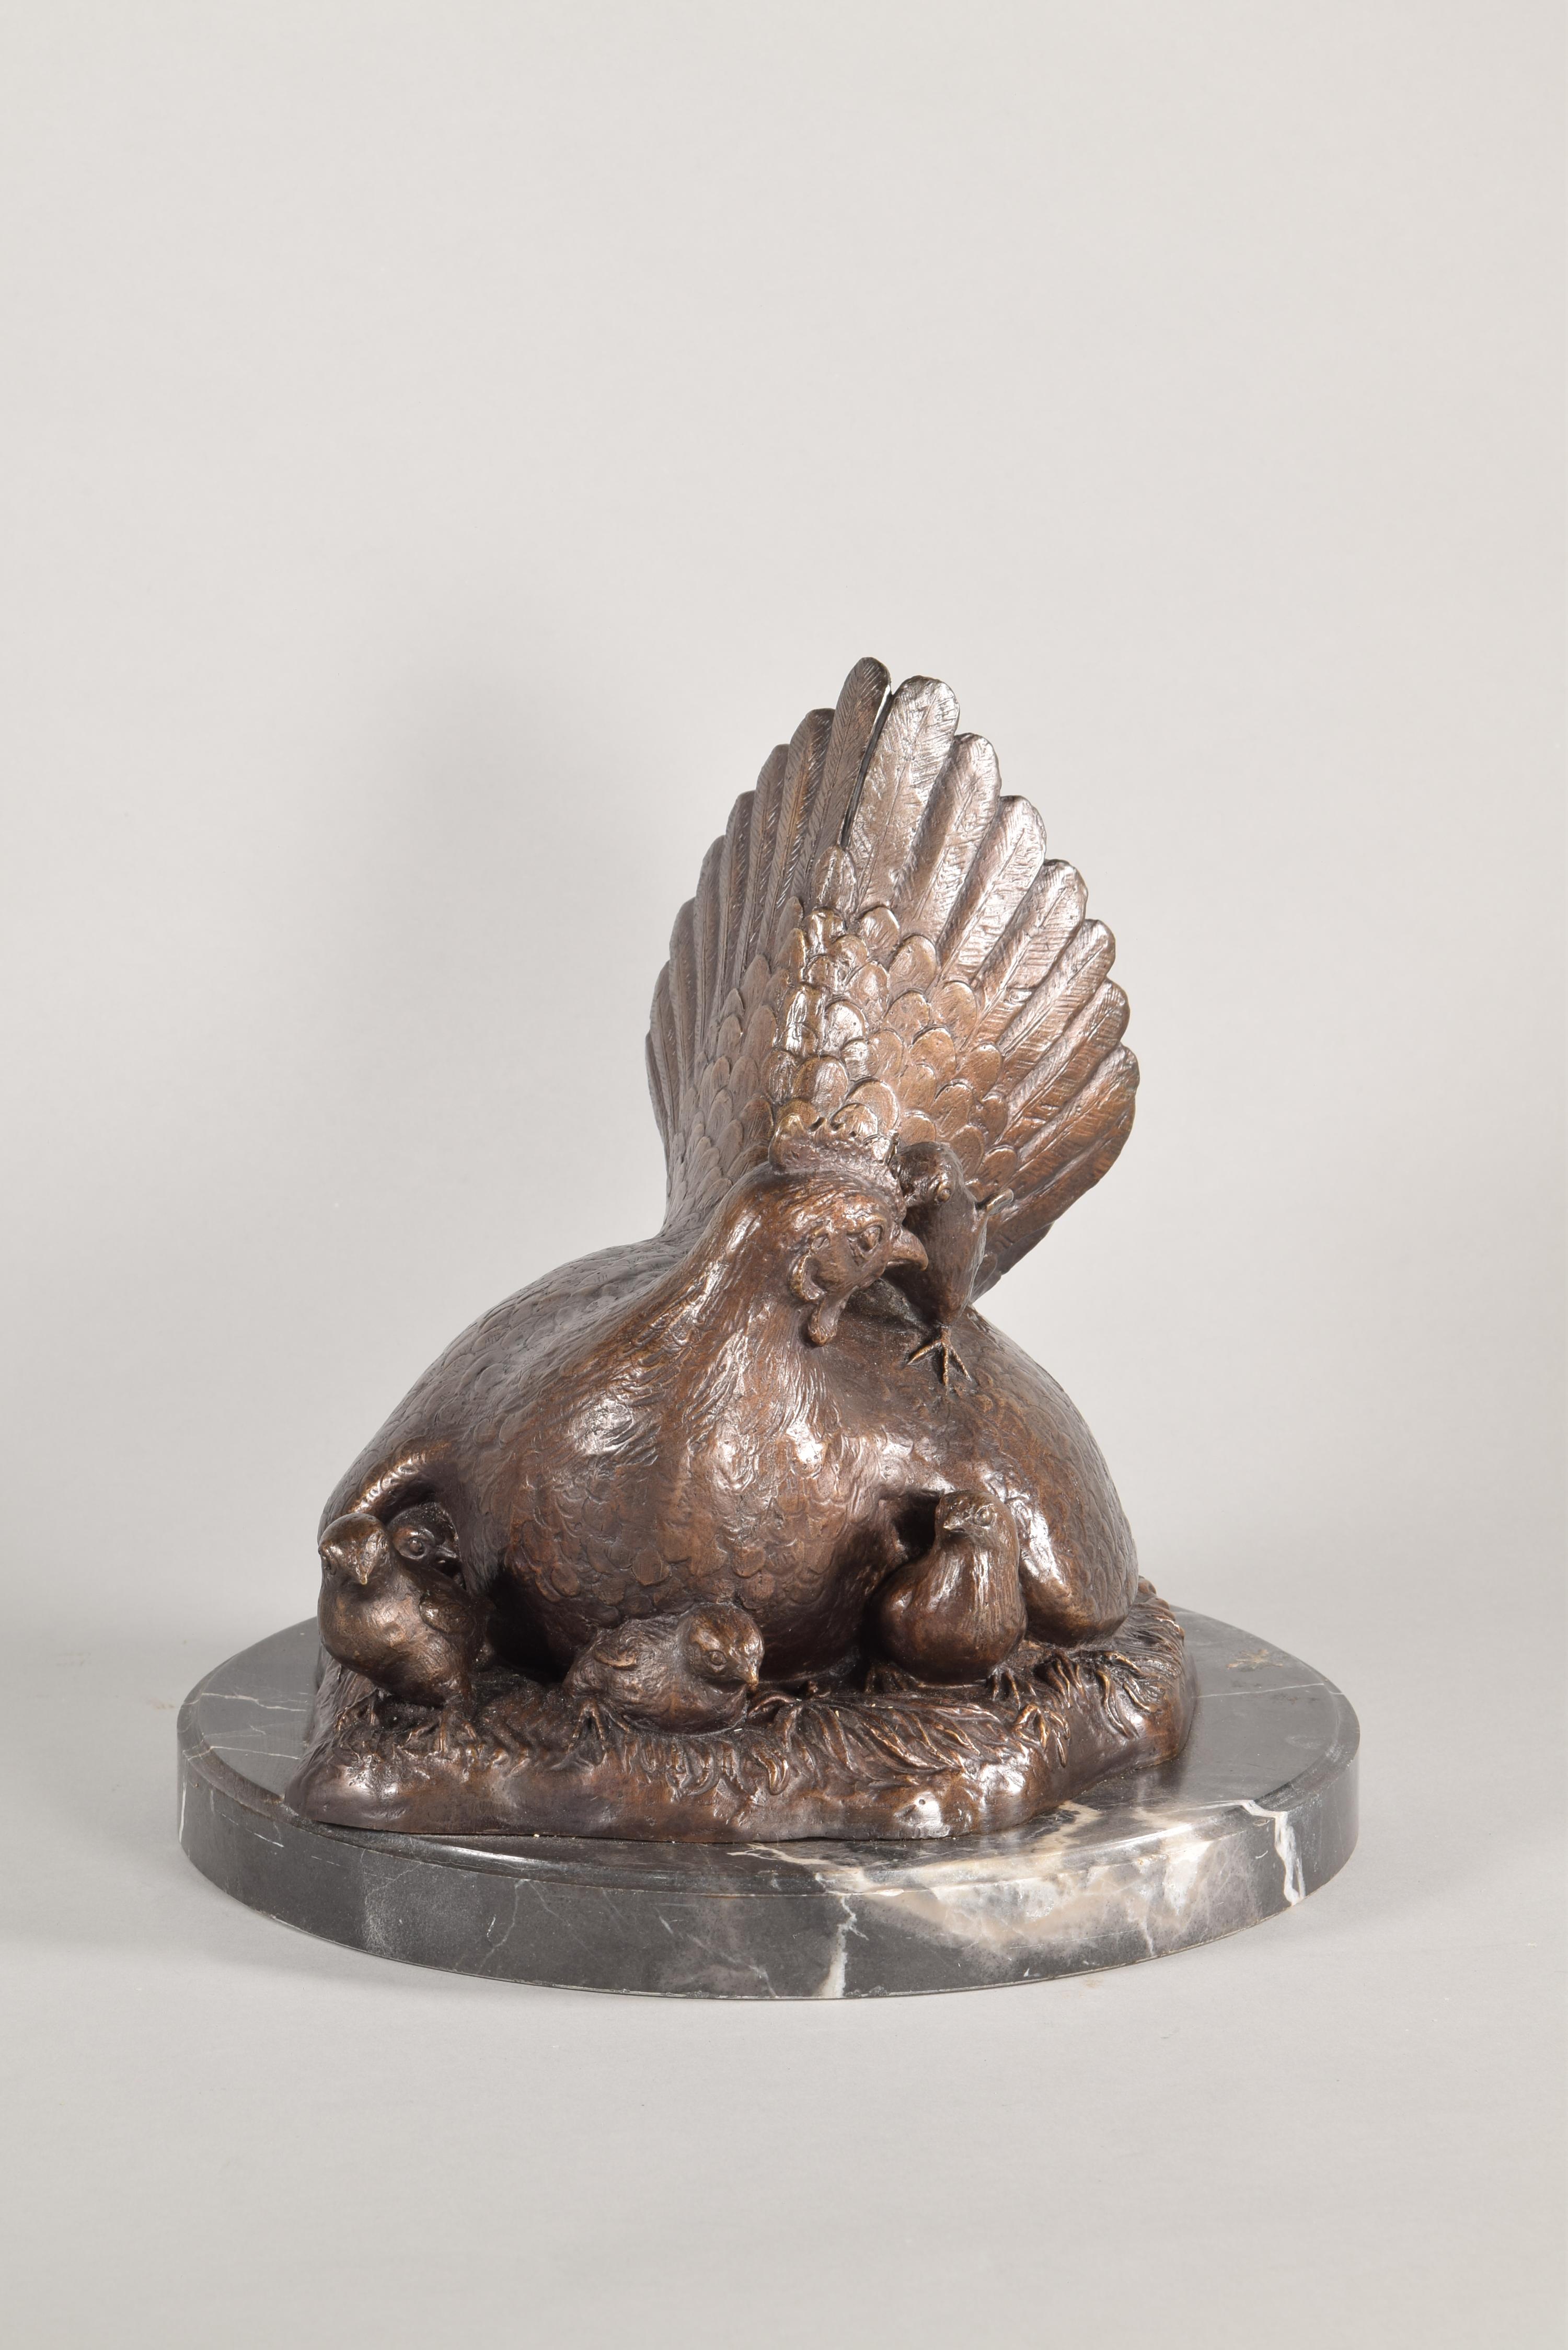 Coq et poule, ensemble de sculptures, bronze, marbre 2